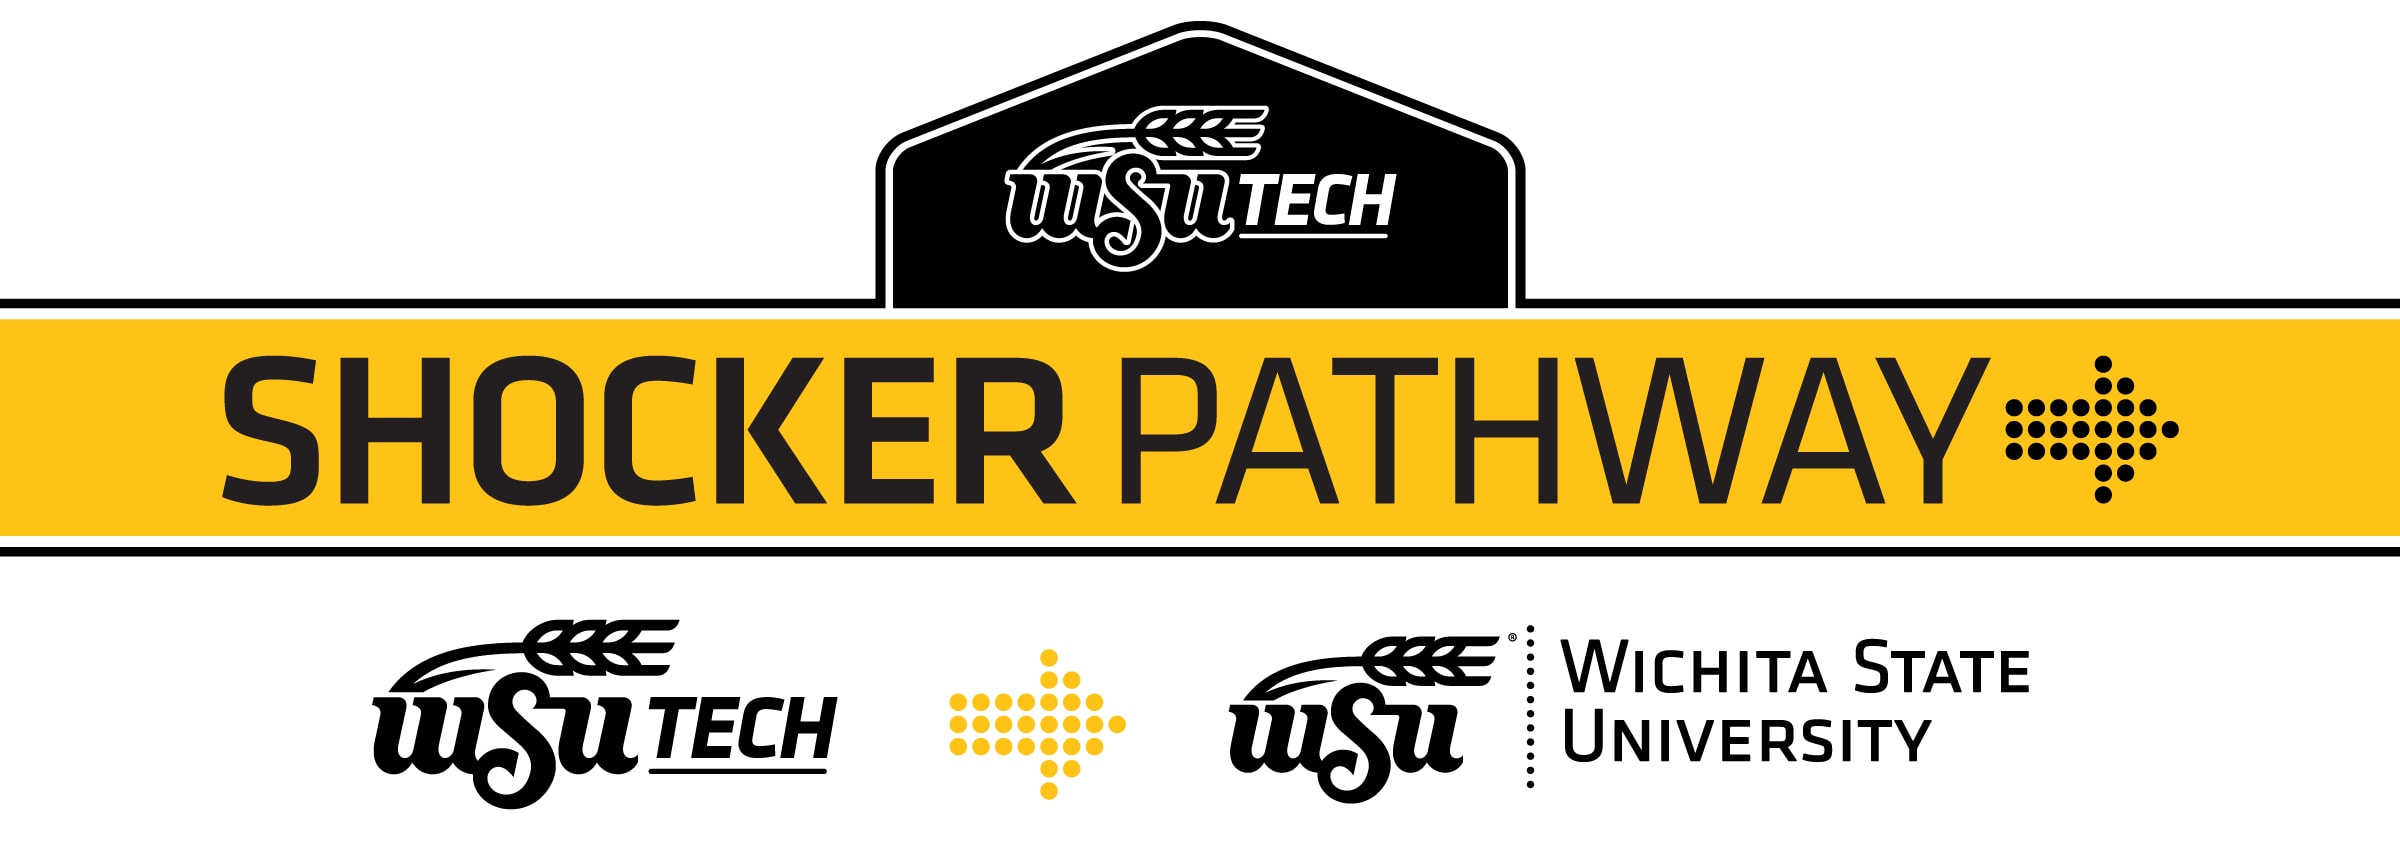 Shocker Pathway - WSU Tech to Wichita State University